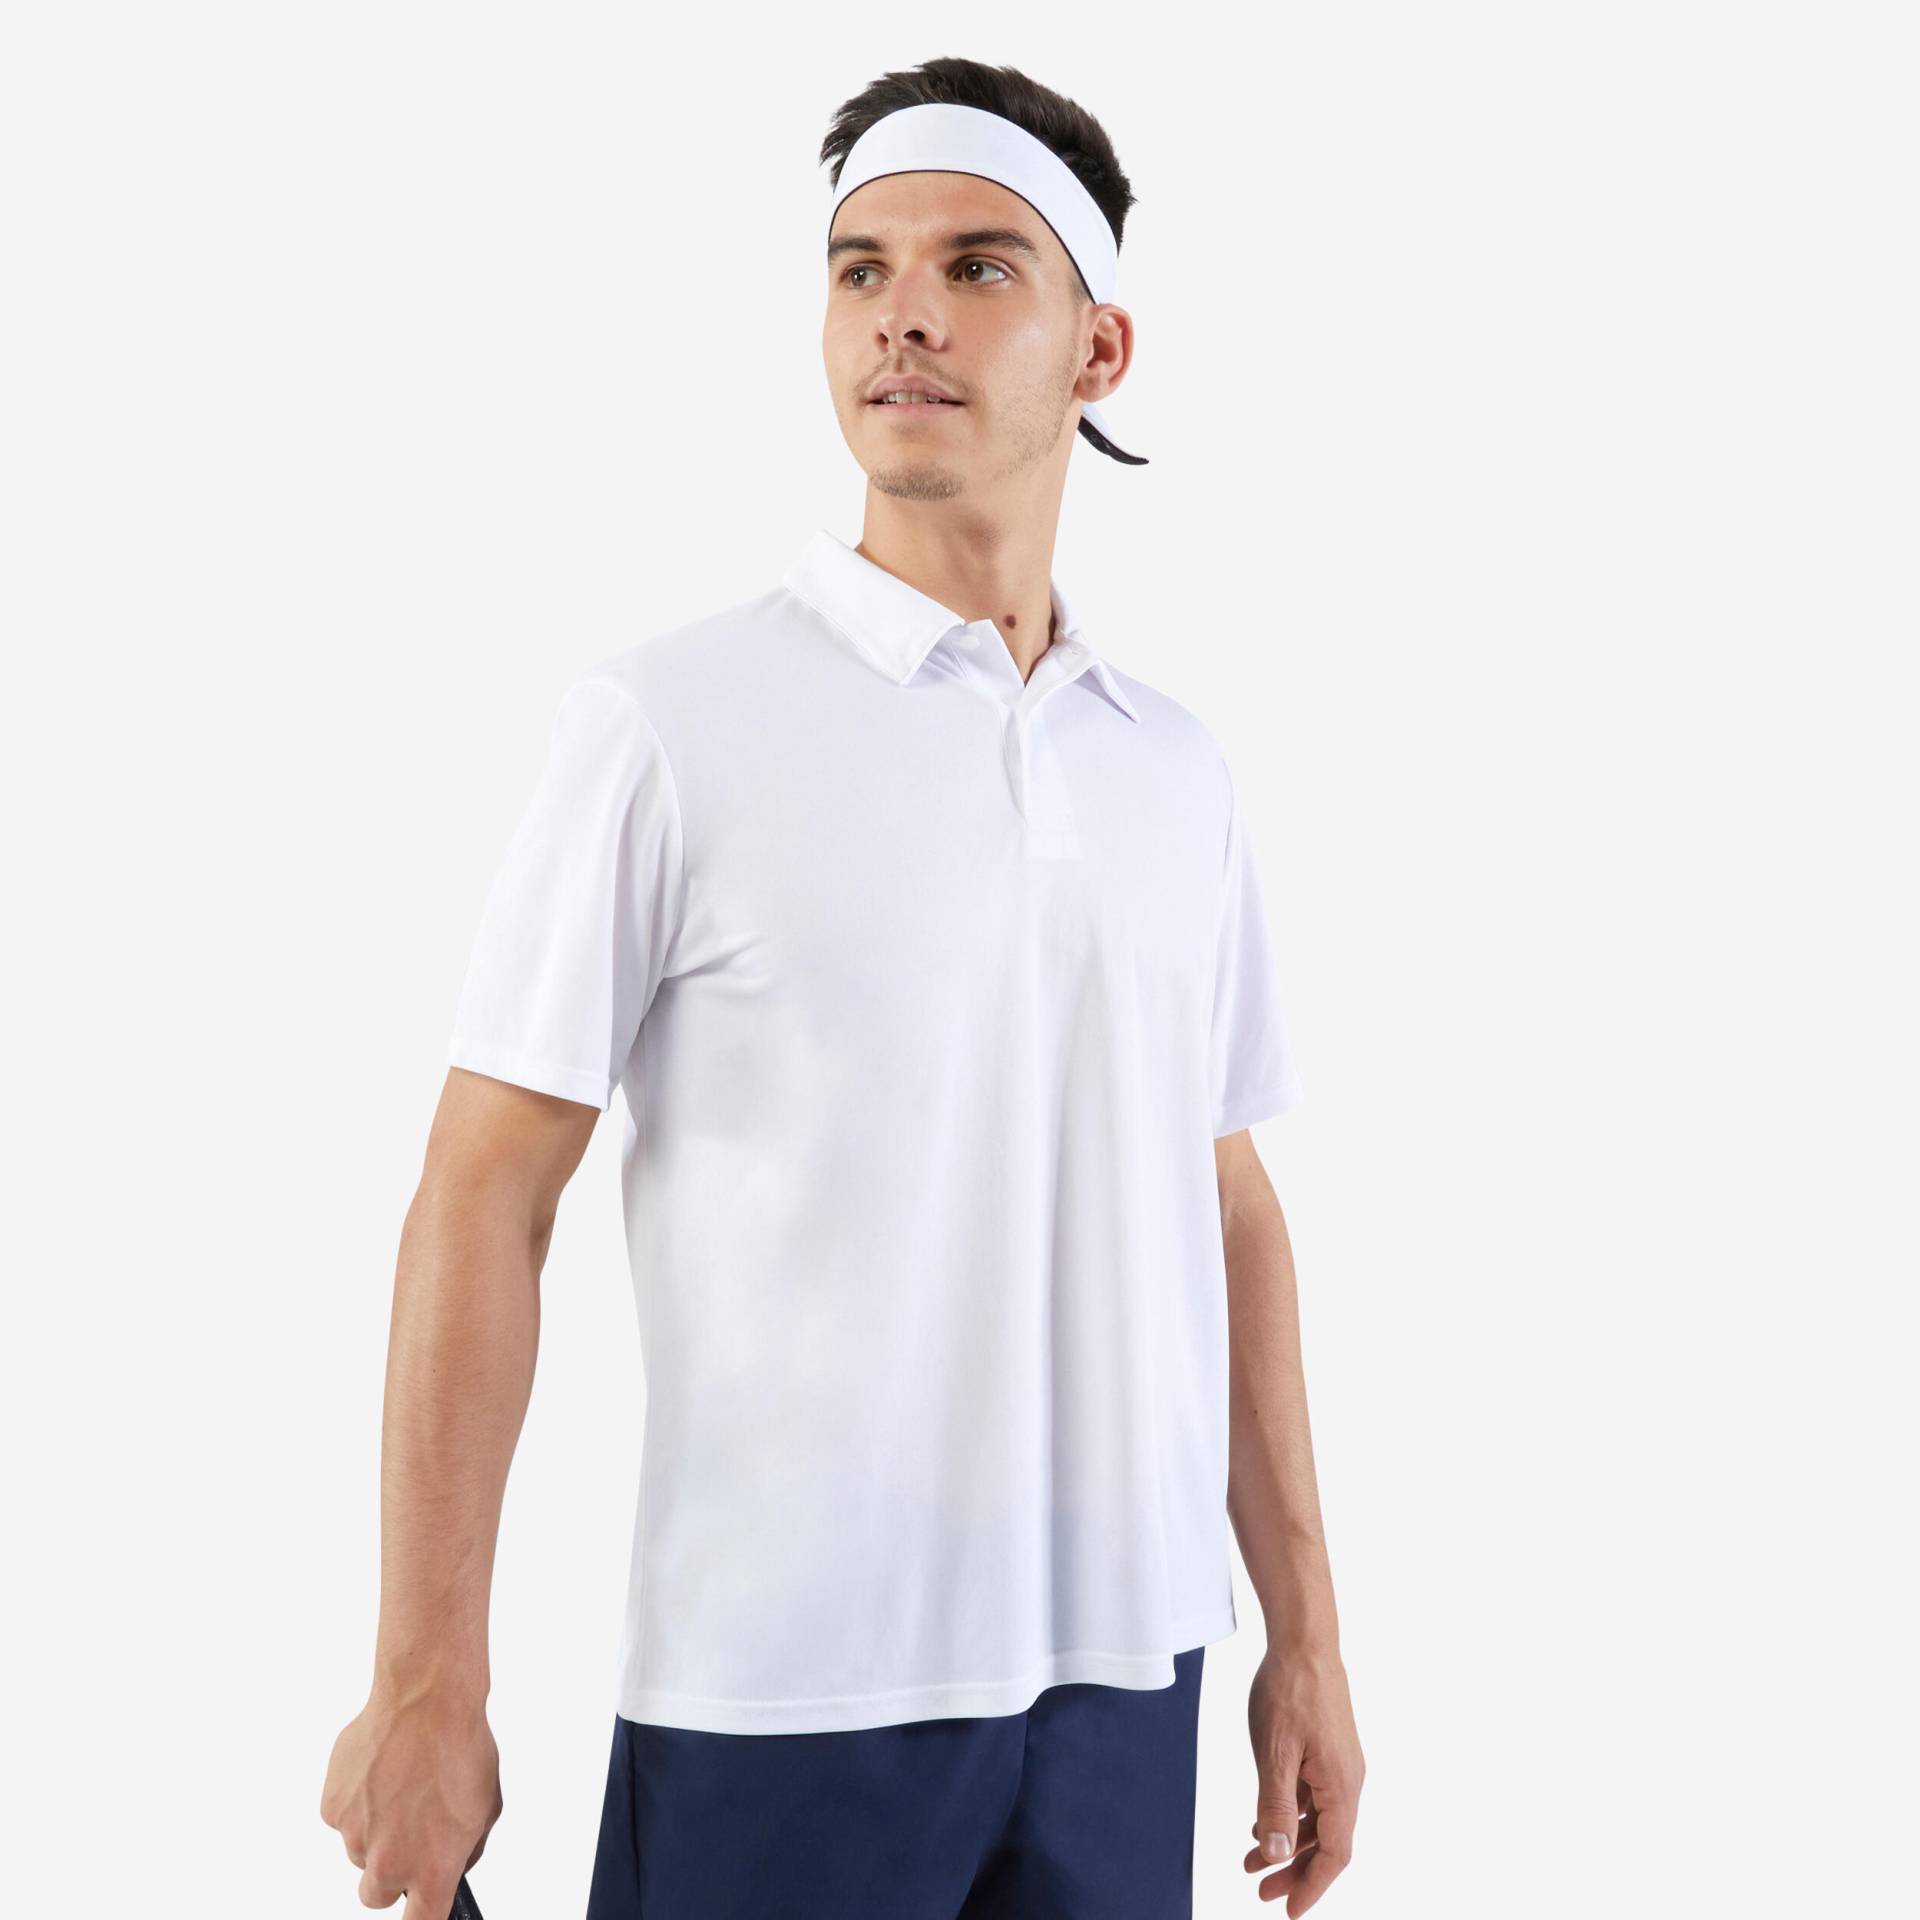 Herren Poloshirt kurzarm Tennis - Essential weiss von ARTENGO